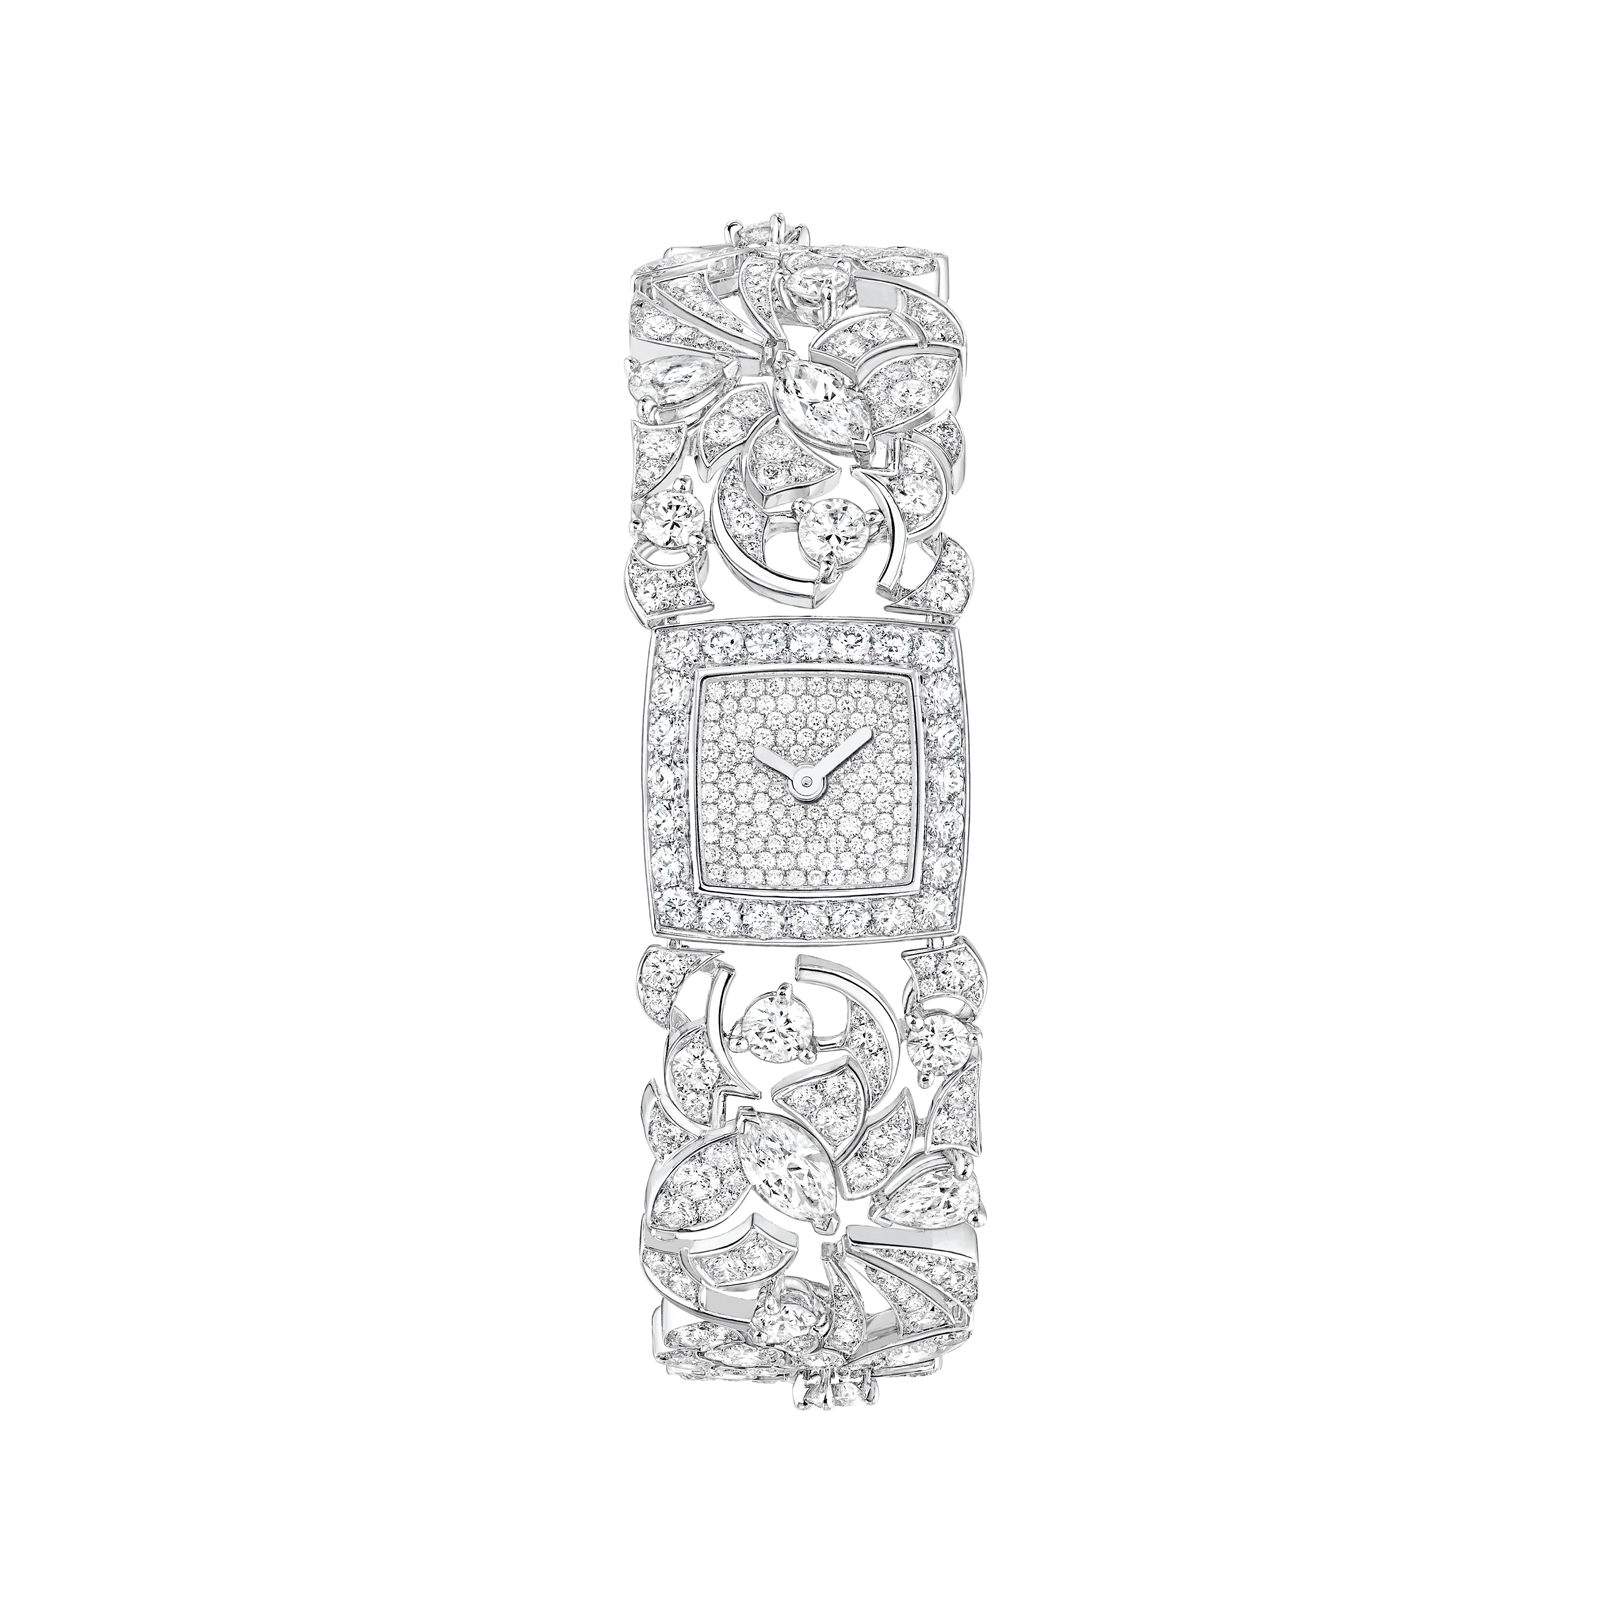 Coco Avant Chanel, collection joaillière et horlogère